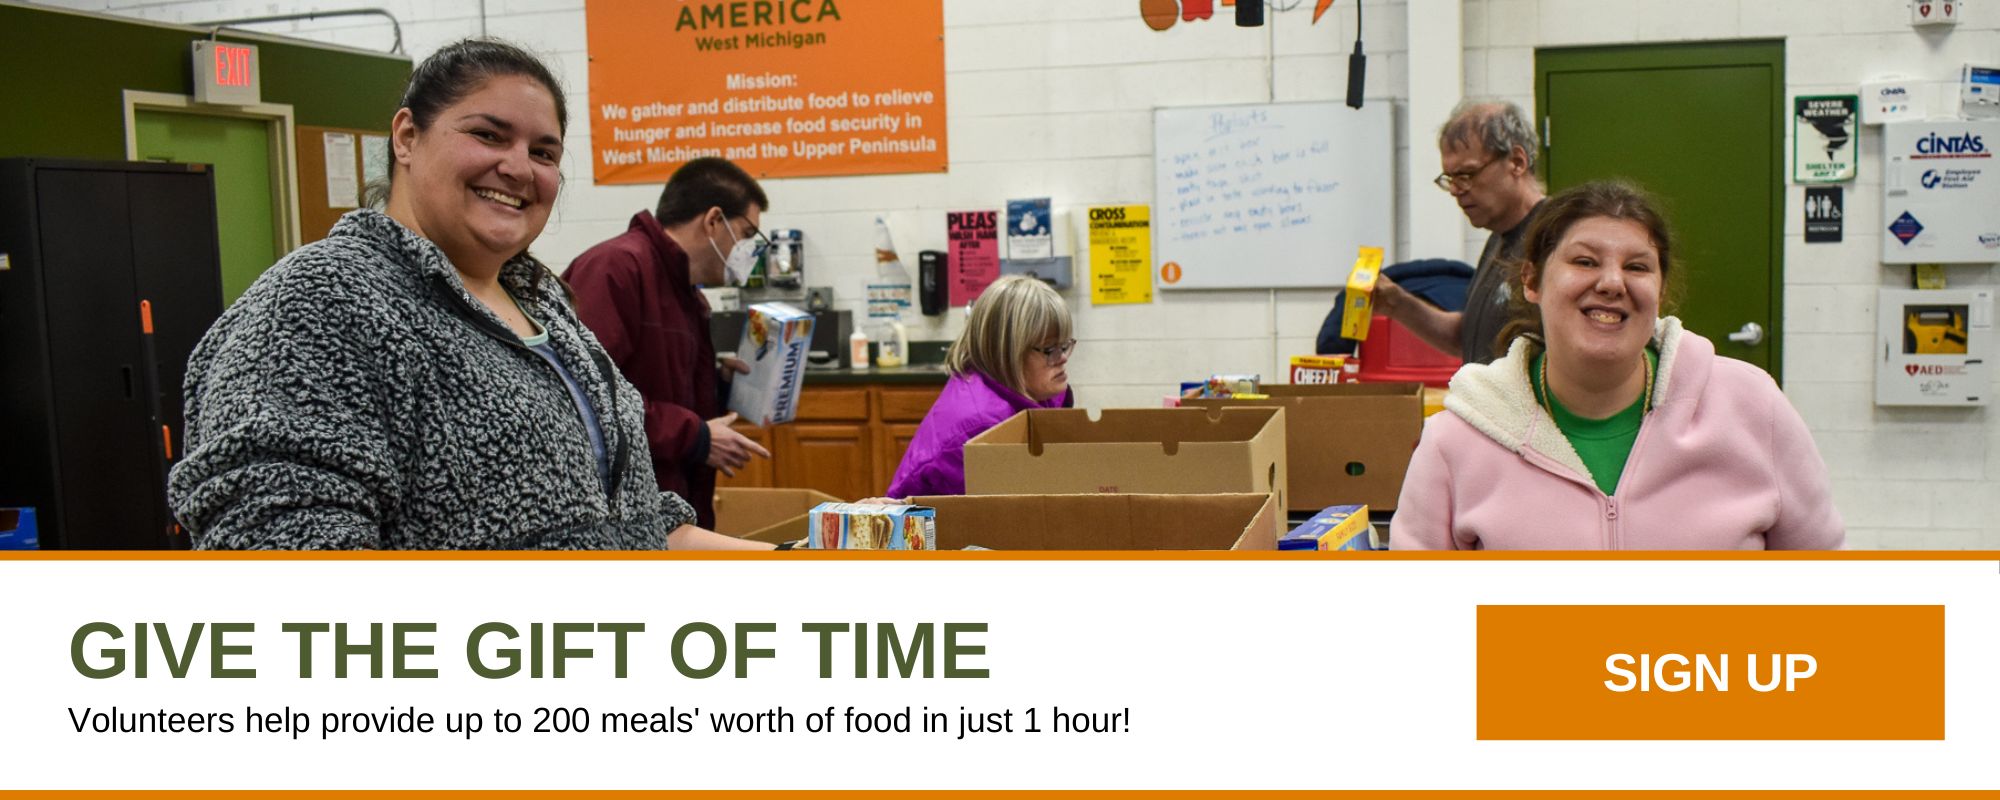 Offrez du temps. Les bénévoles aident à fournir jusqu'à 200 repas de nourriture en seulement 1 heure ! S'inscrire